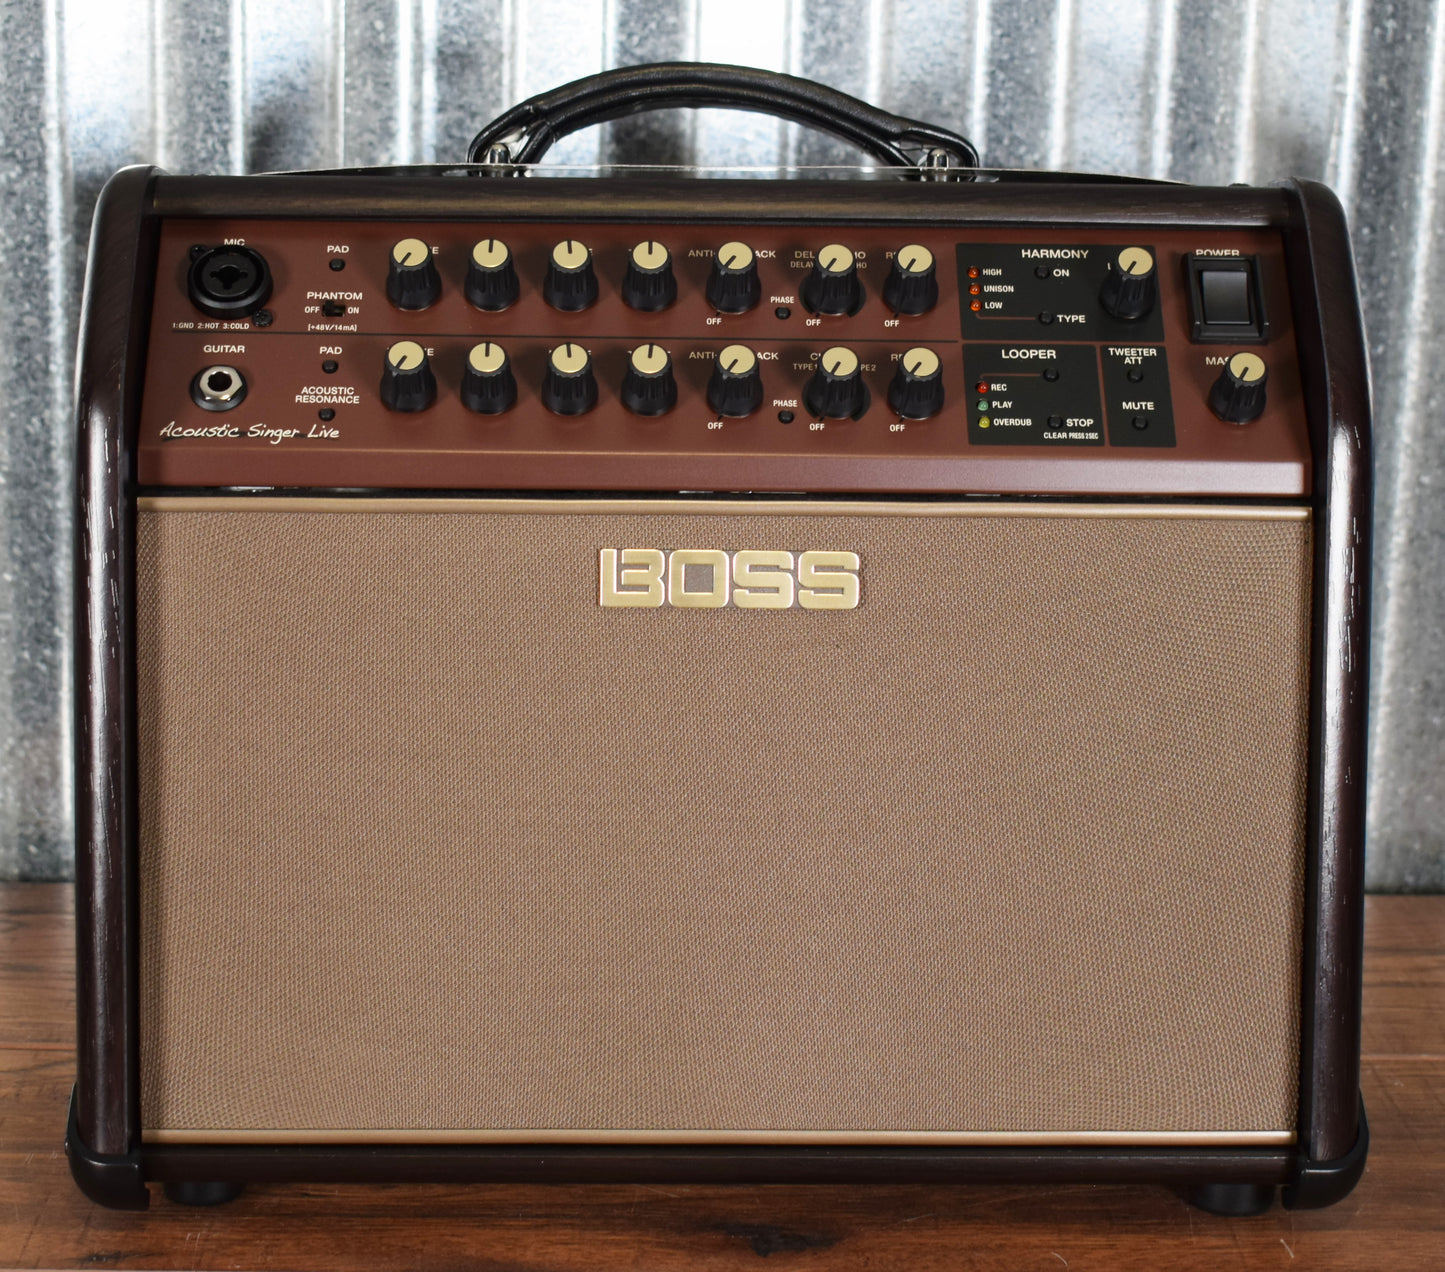 Boss Acoustic Singer ACS LIVE 60 Watt 1x6.5" Guitar Combo Amplifier